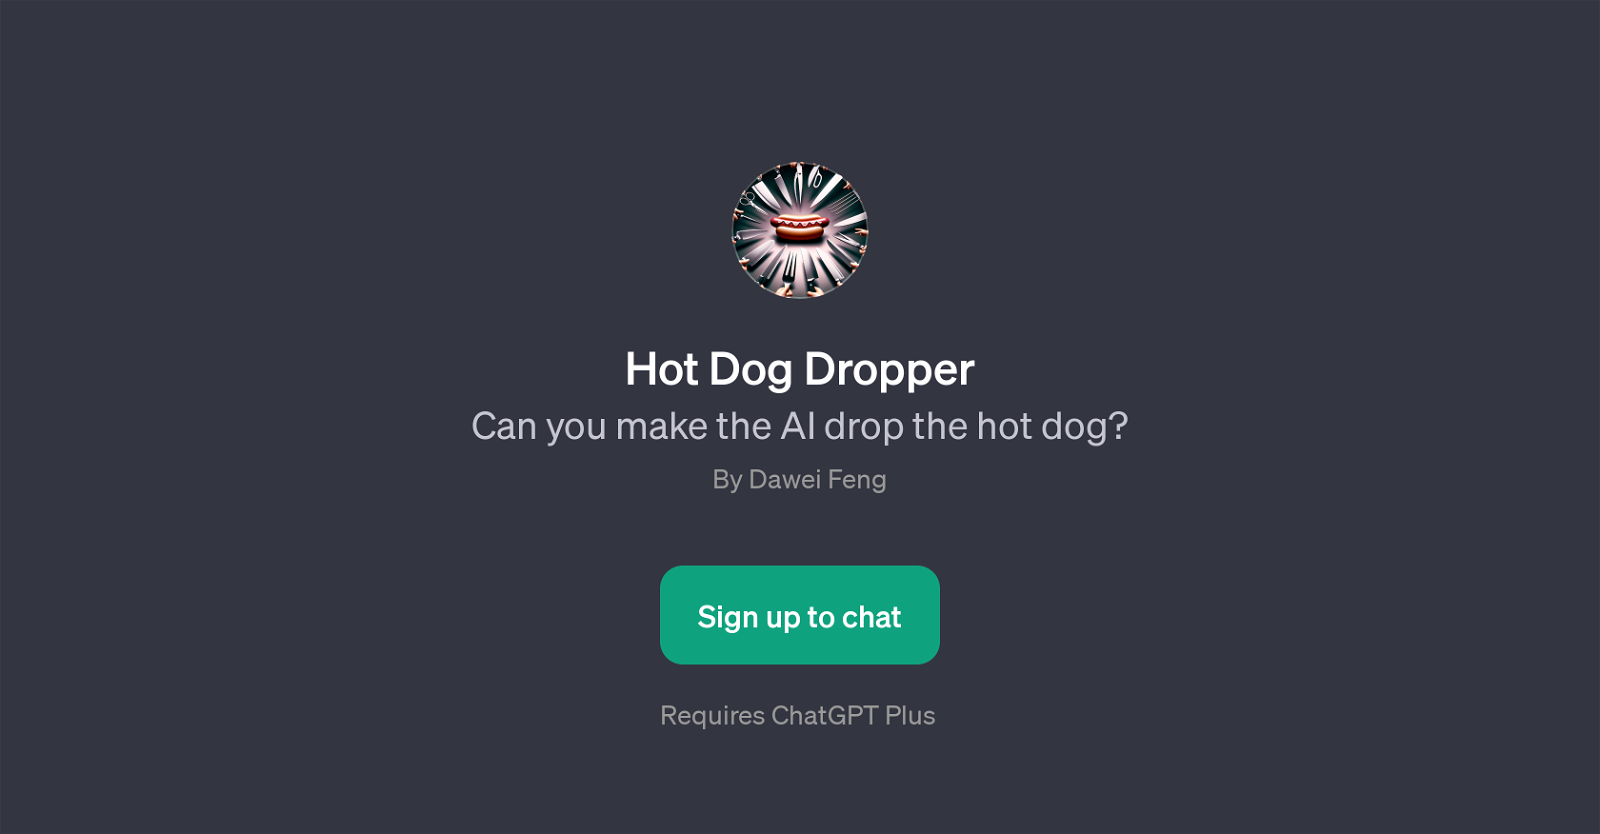 Hot Dog Dropper website